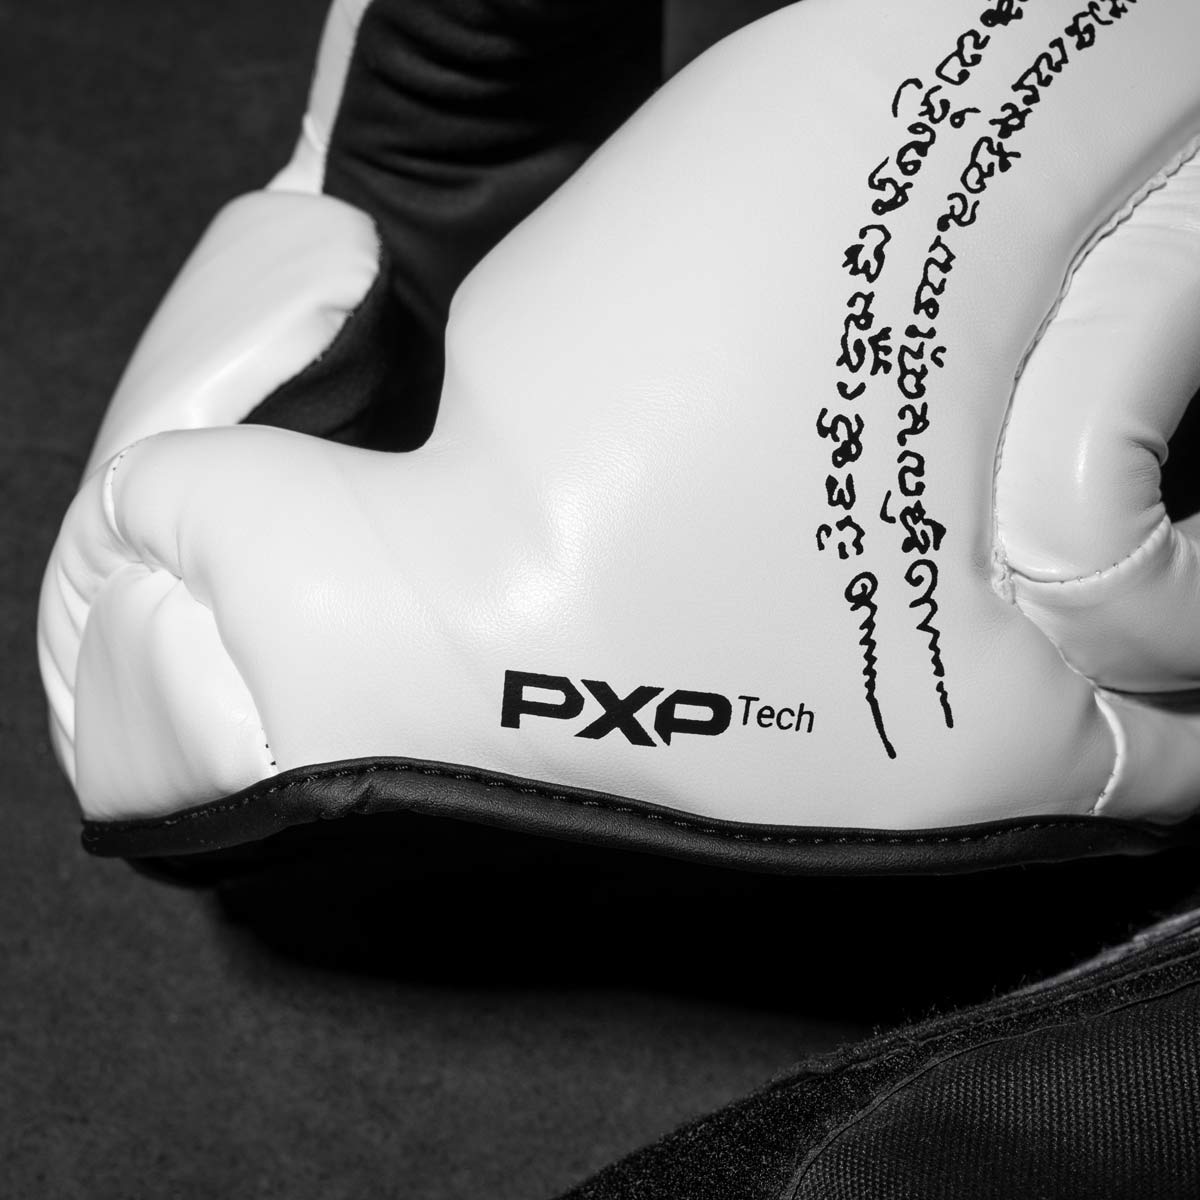 Phantom Muay Thai Kopfschutz für Thaiboxen und MMA Sparring, Wettkampf und Training. Im traditionellen Sak Yant Design und der Farbe Weiß.